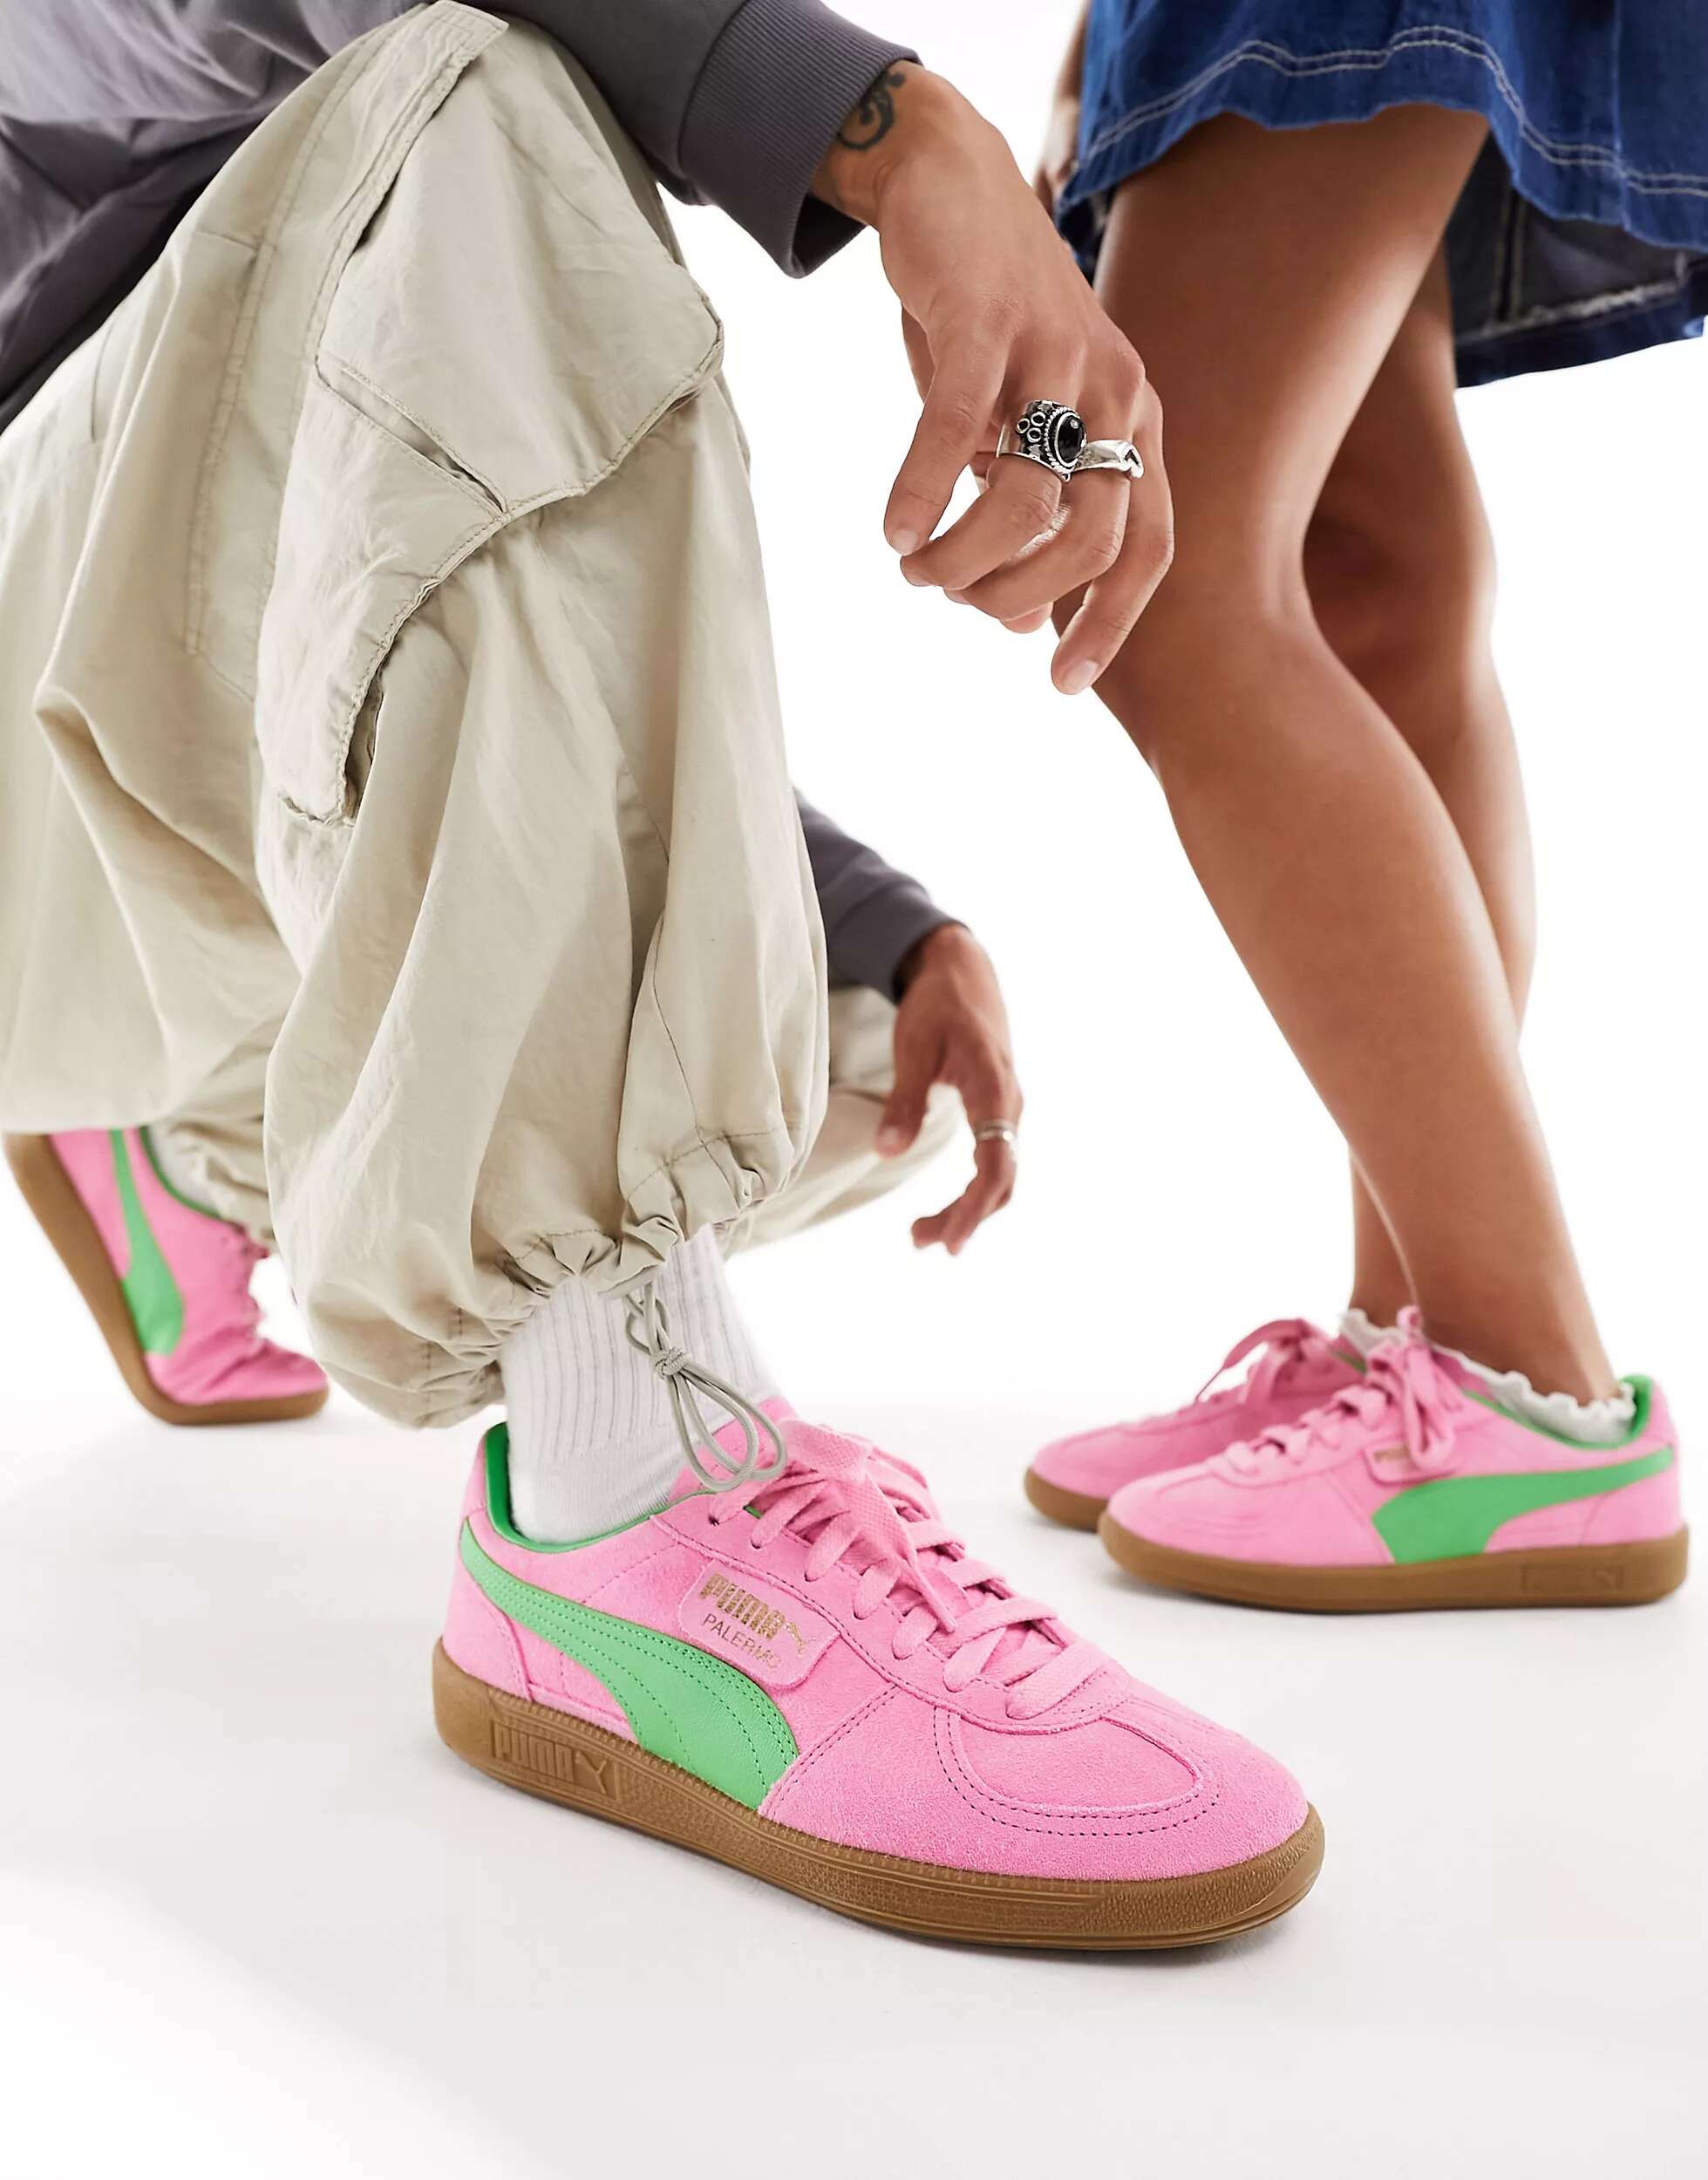 Кроссовки Puma Palermo Special розового и зеленого цвета